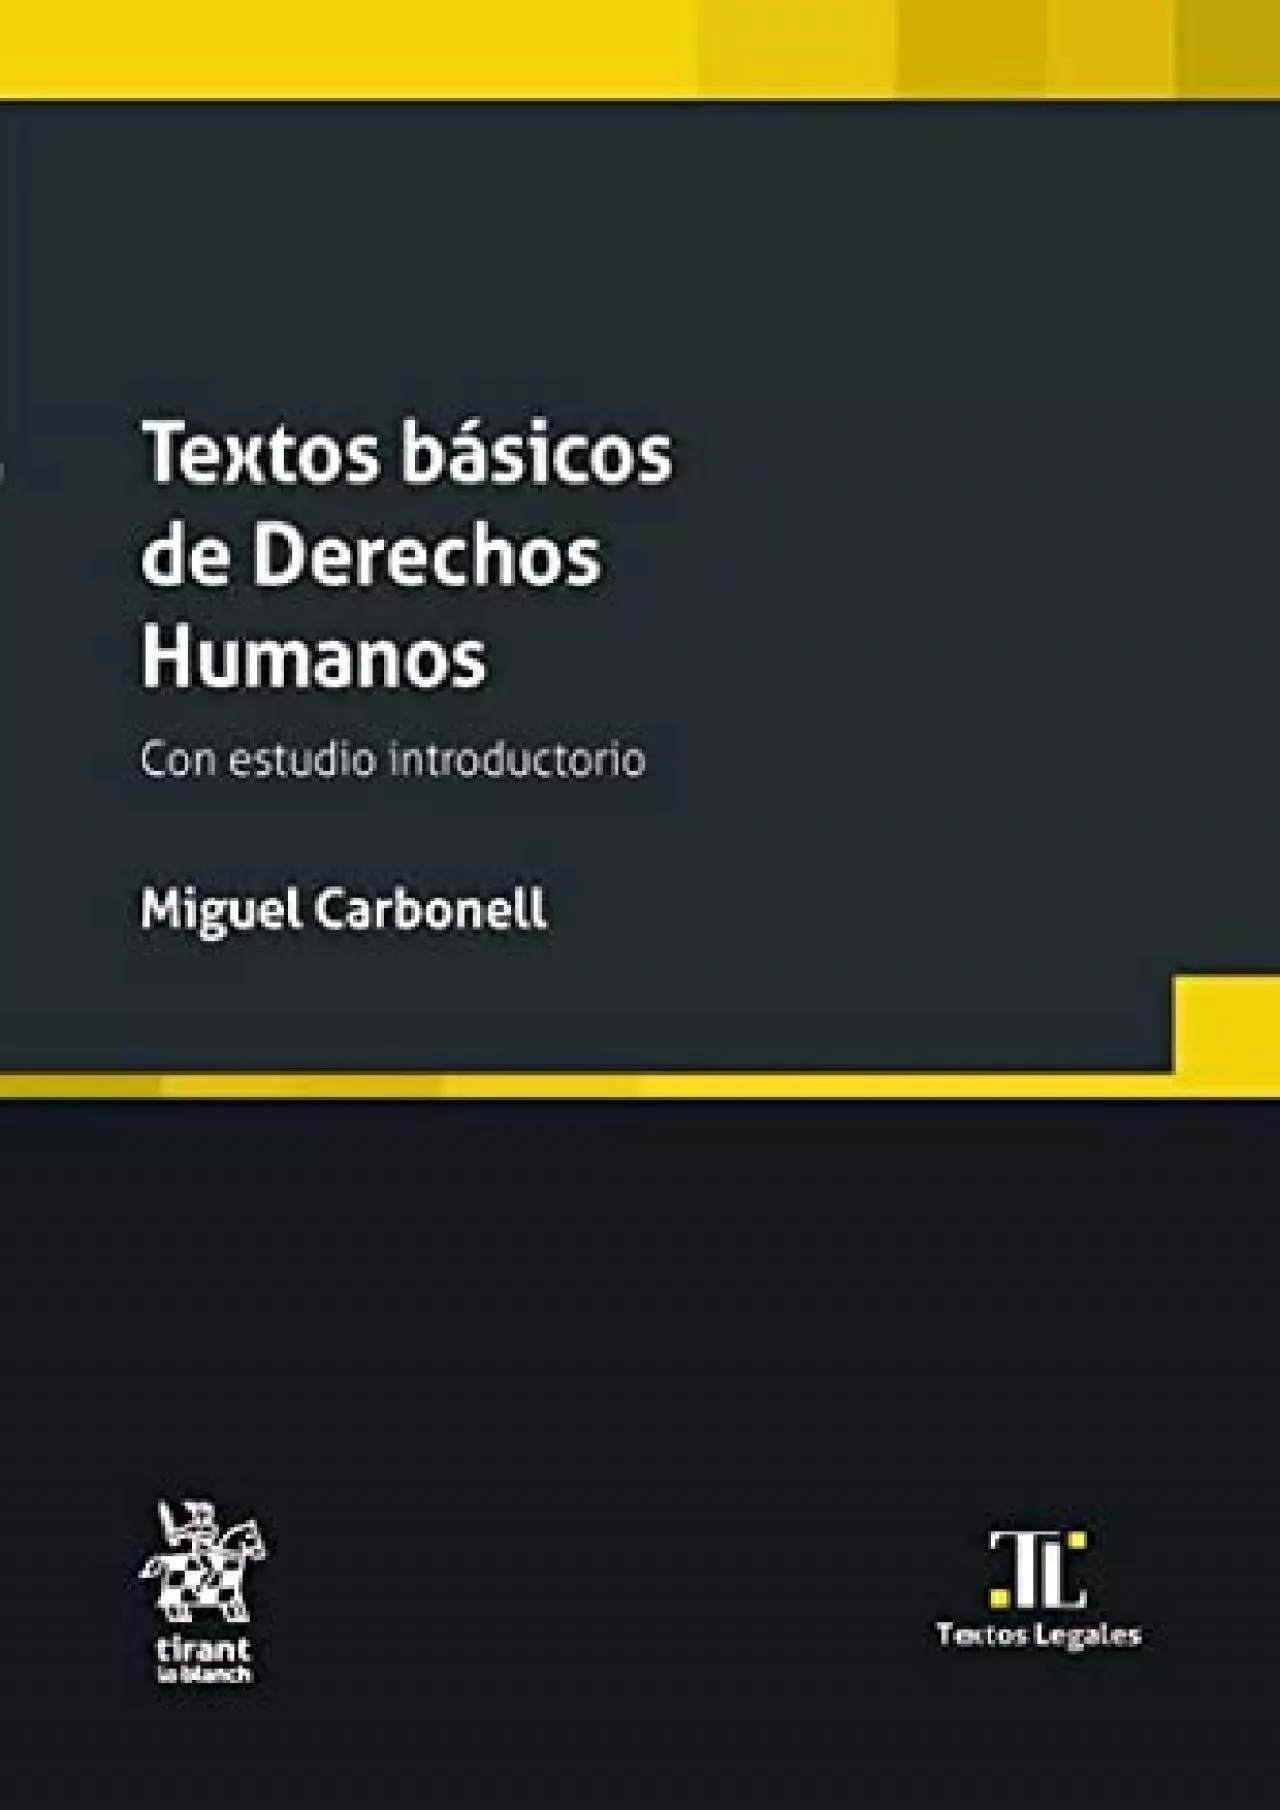 [PDF READ ONLINE] Textos básicos de Derechos Humanos. Con estudio introductorio (Textos